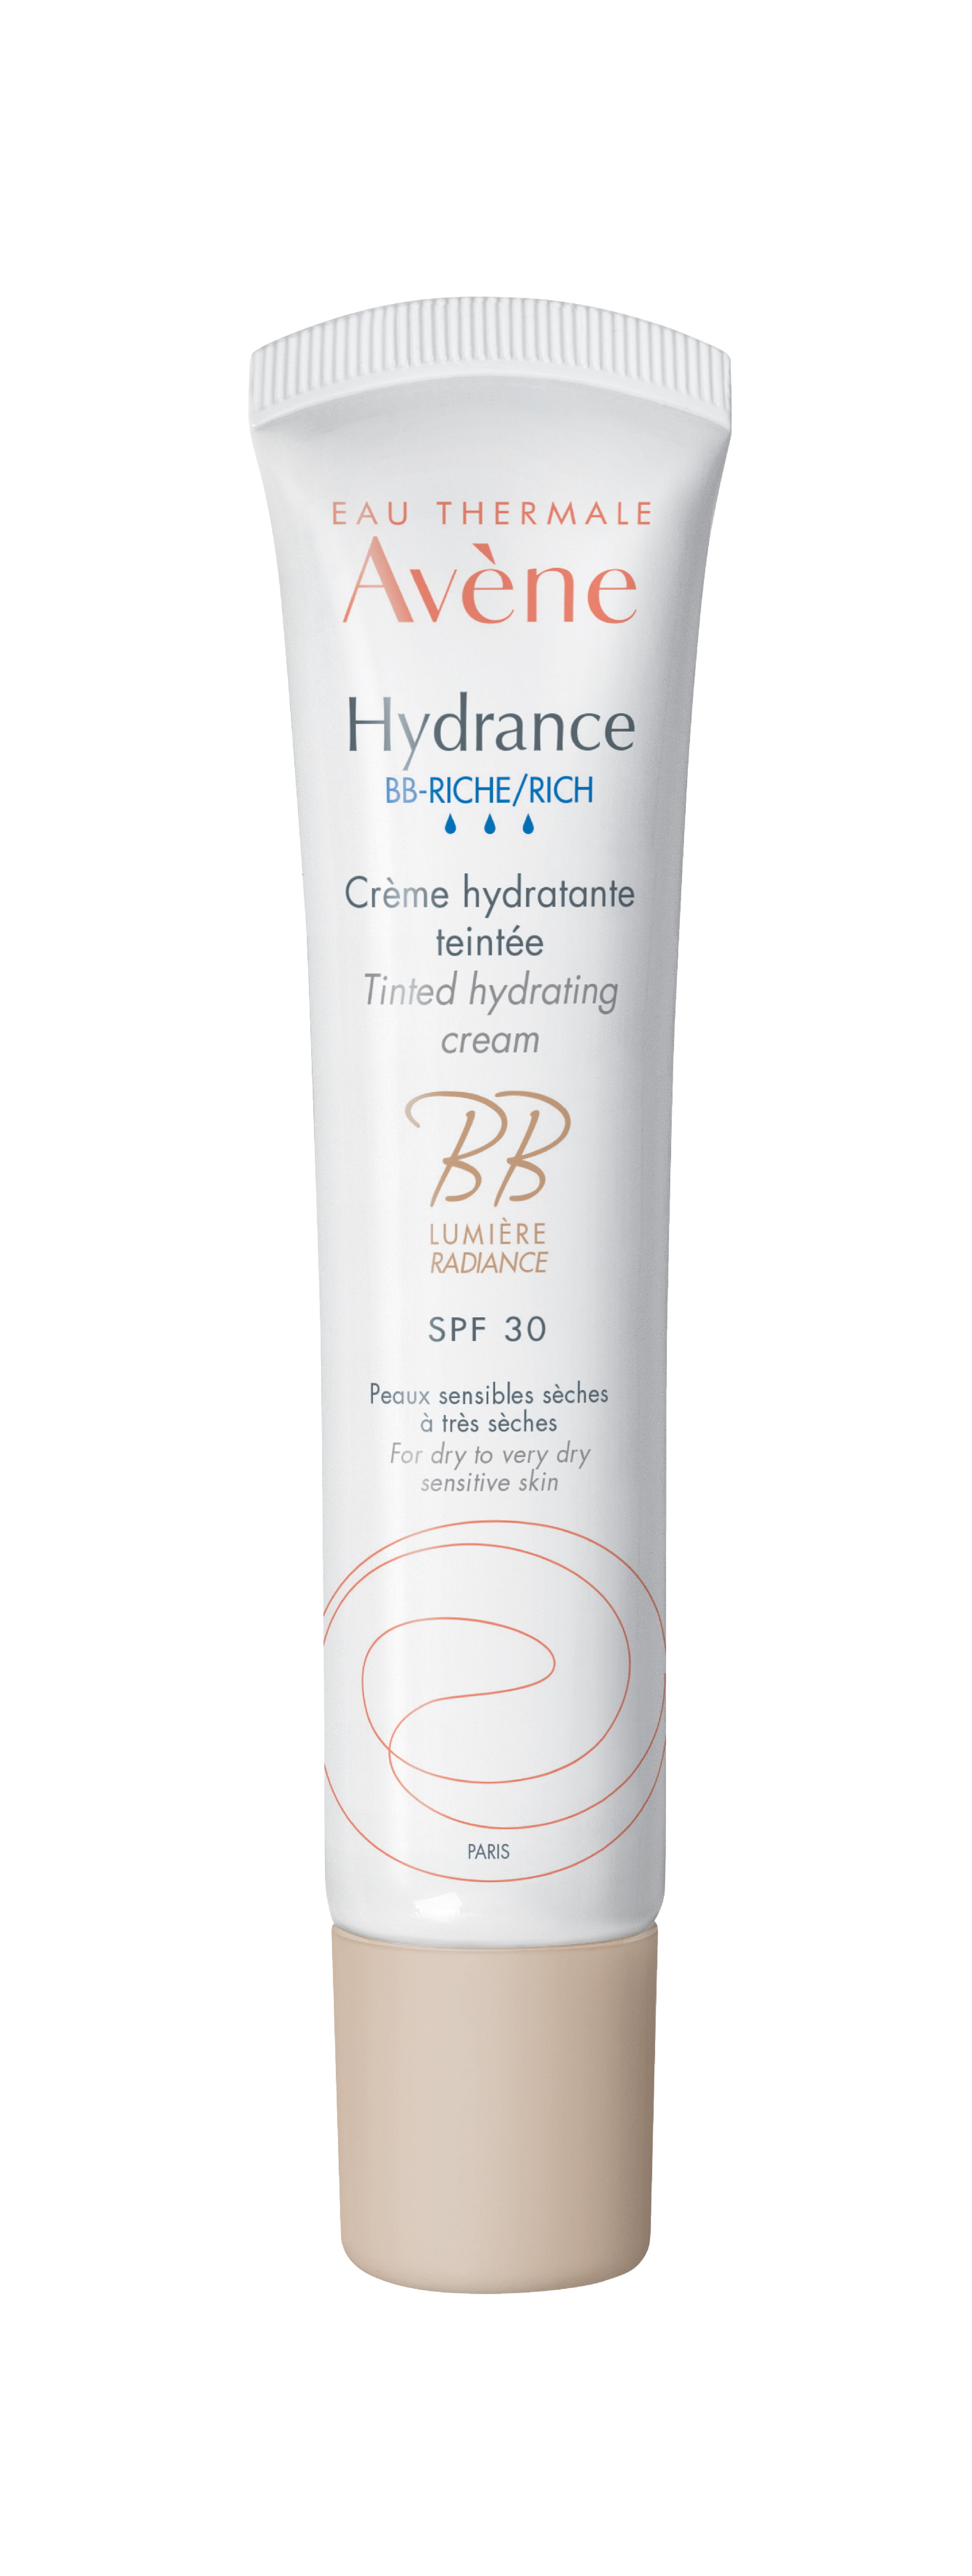 Avene Hydrance BB-Riche SPF 30 увлажняющий крем с тонирующим эффектом для сухой и очень сухой чувствительной кожи 40мл